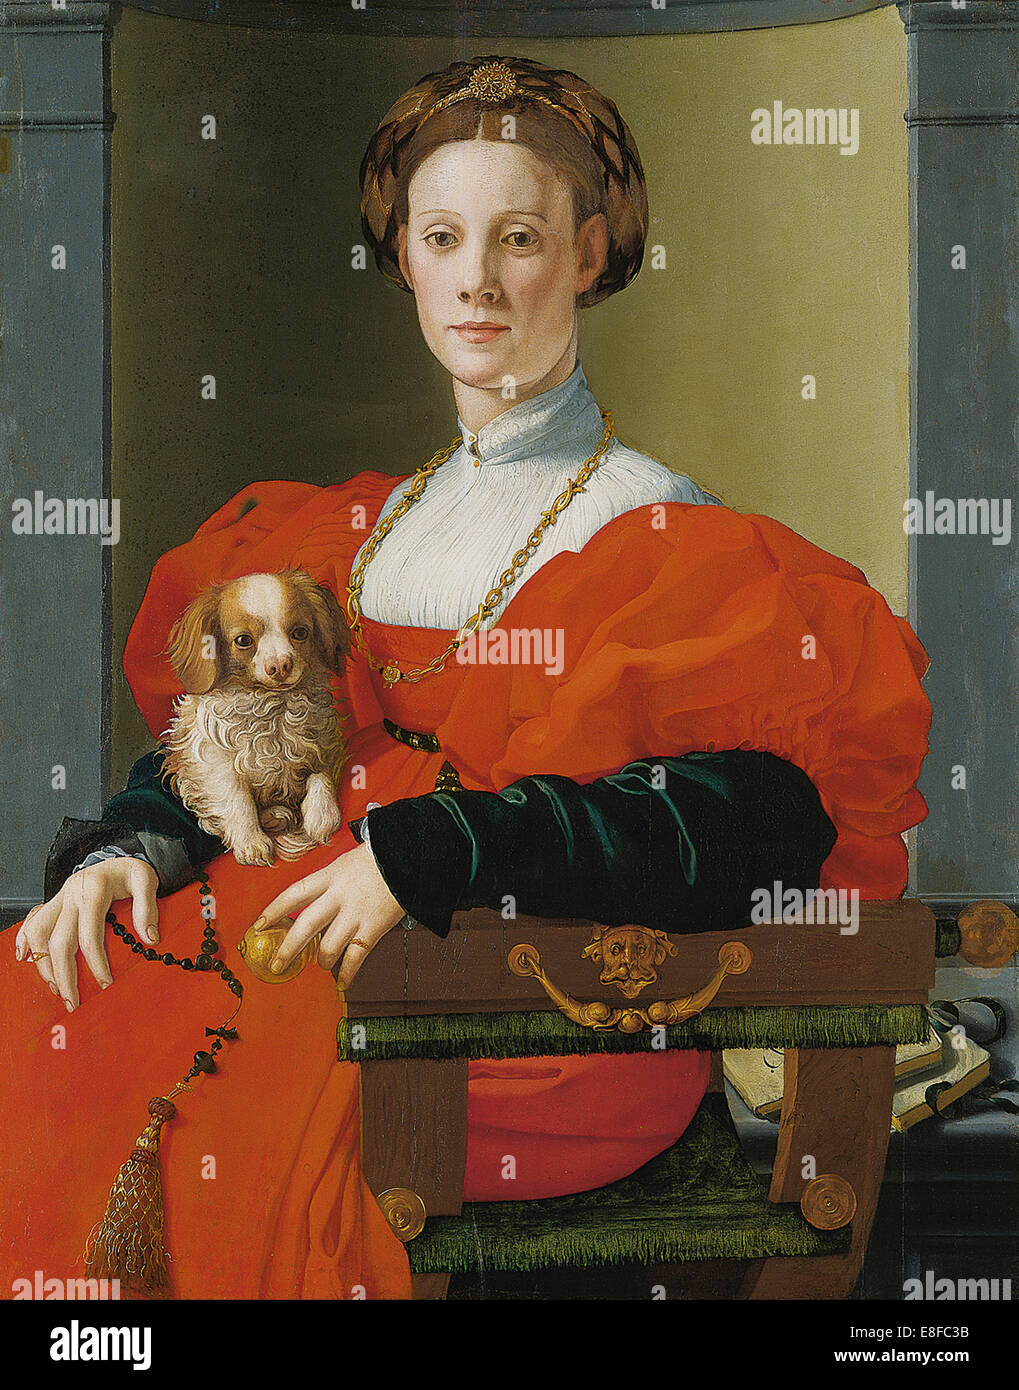 Ritratto di una donna con un piccolo cane. Artista: Pontormo (1494-1557) Foto Stock